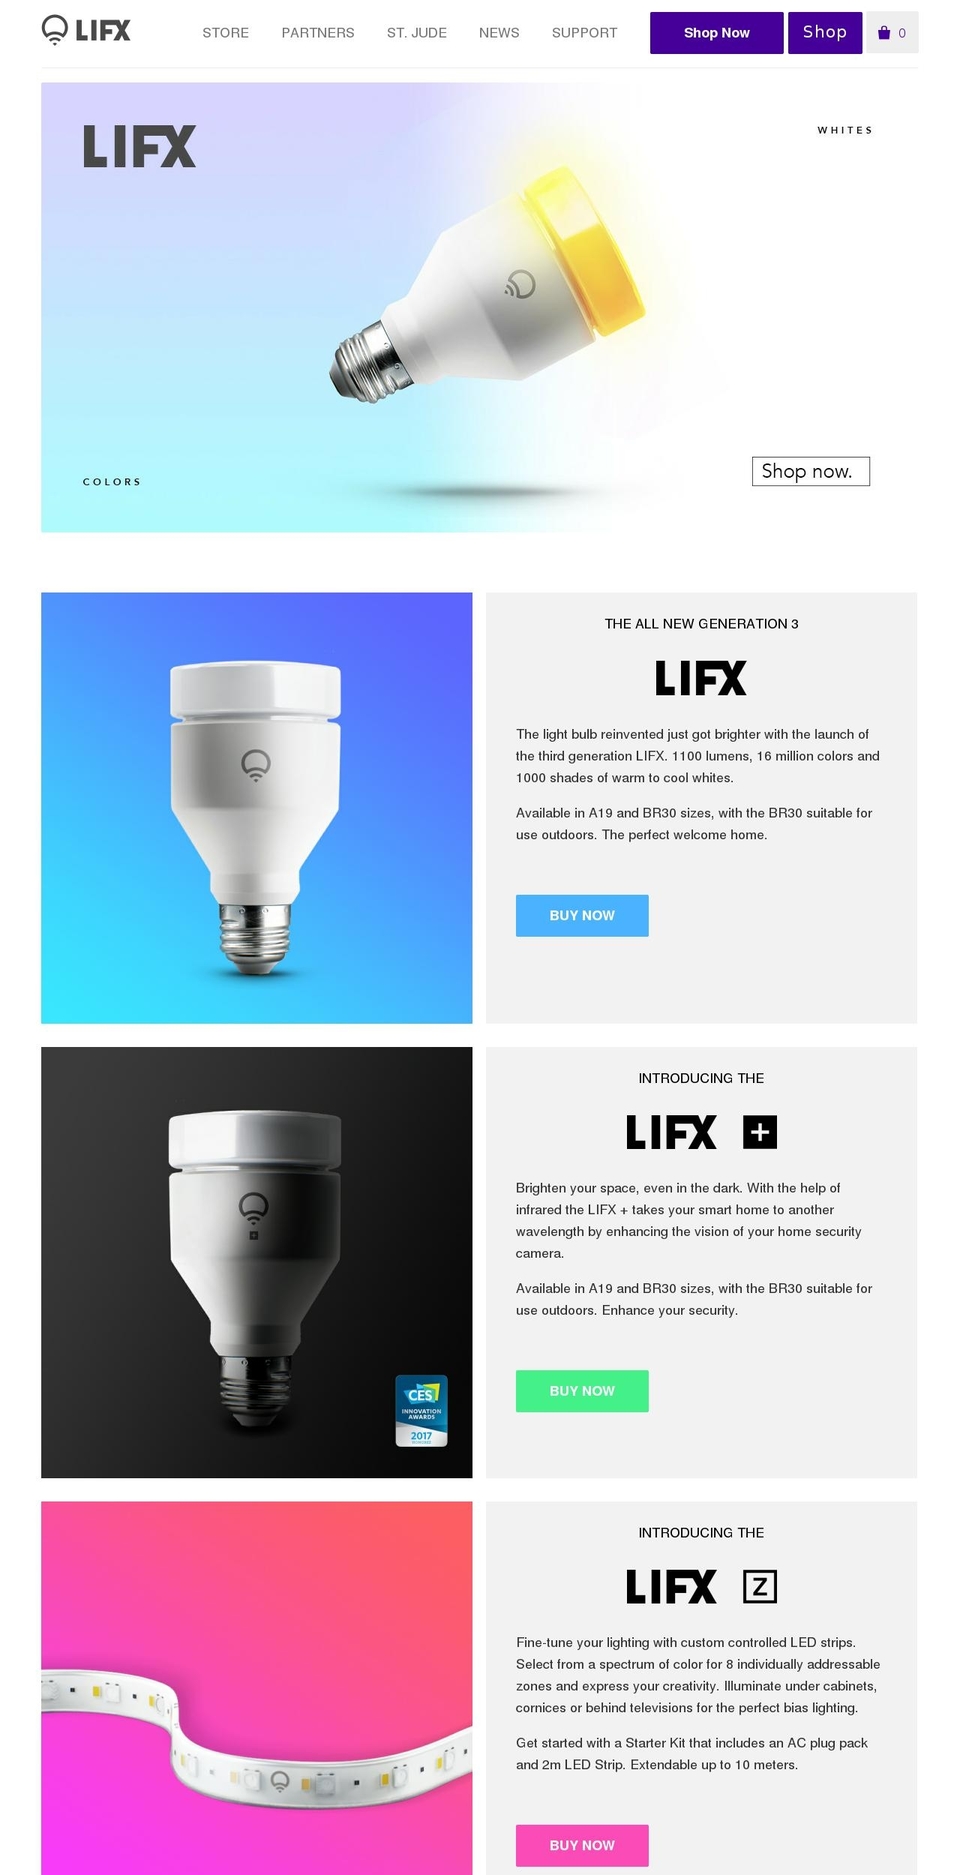 lifx.com shopify website screenshot